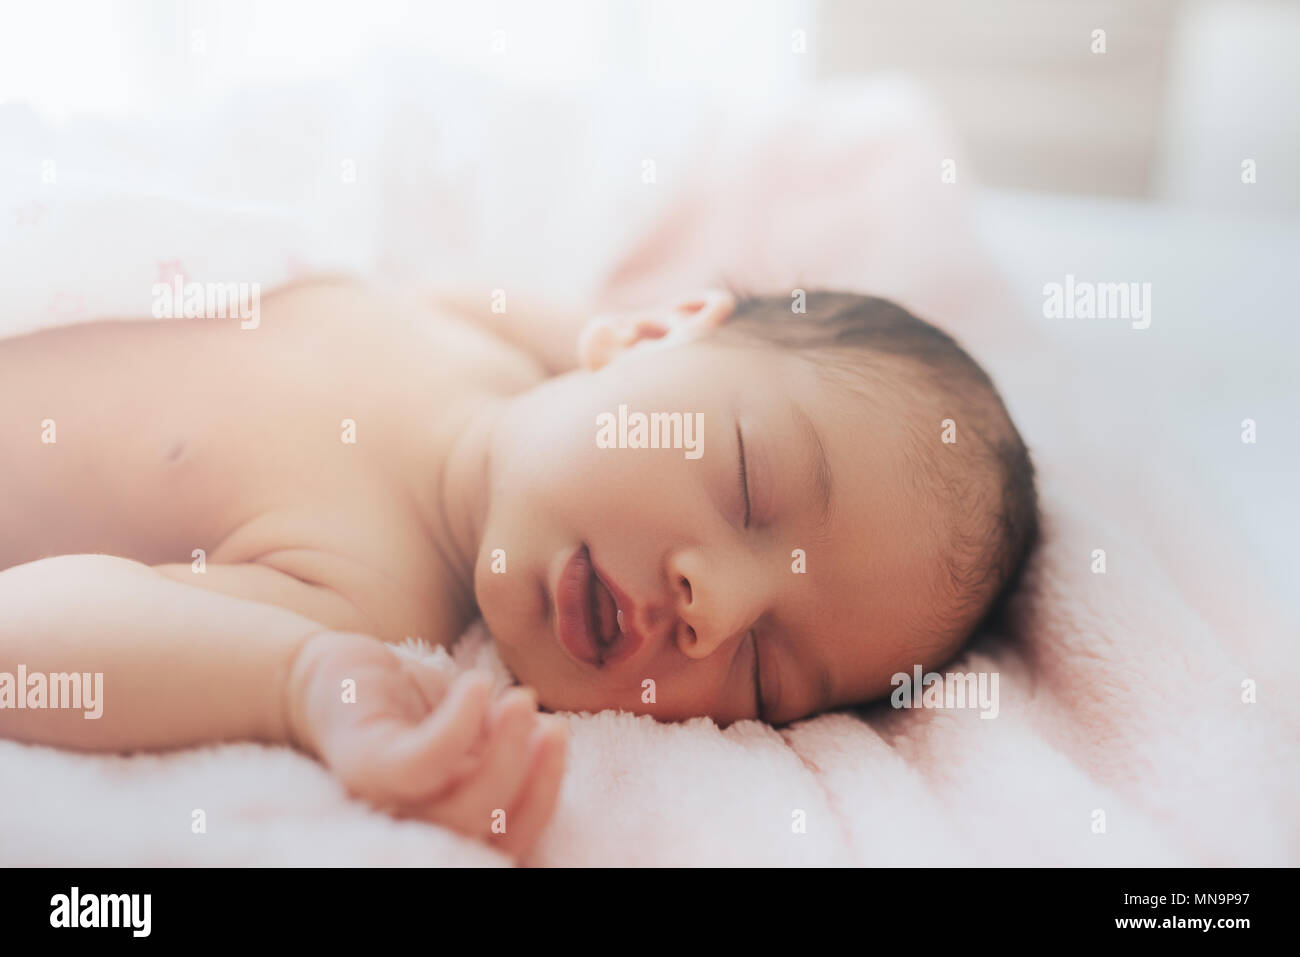 Bébé nouveau-né , close-up, mode de vie, la notion de pureté et d'innocence, Banque D'Images